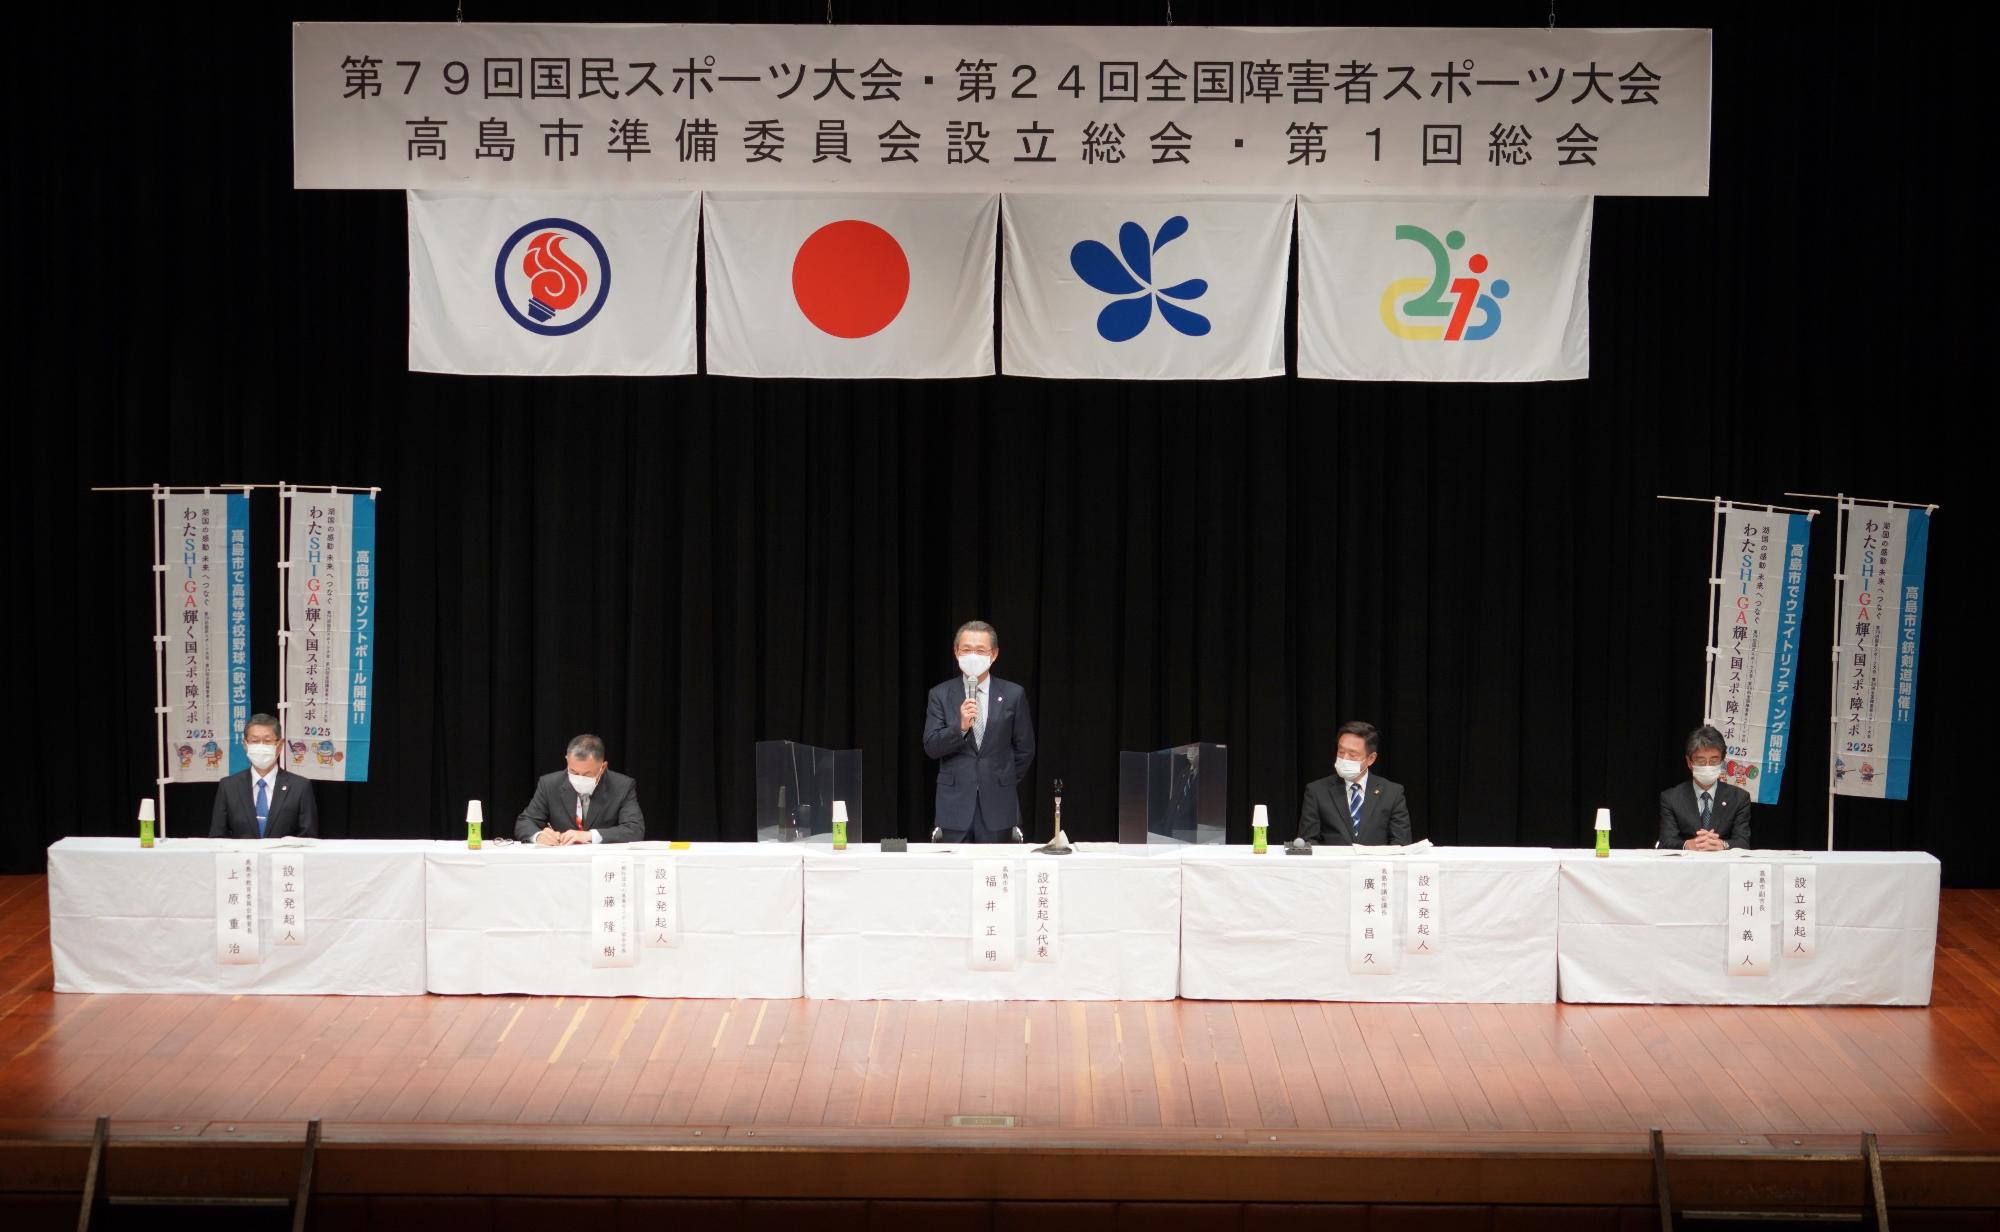 壇上に設置された机と椅子に準備委員会の方々が座り、中央の福井市長が立ちマイクを使って話をしている様子の写真